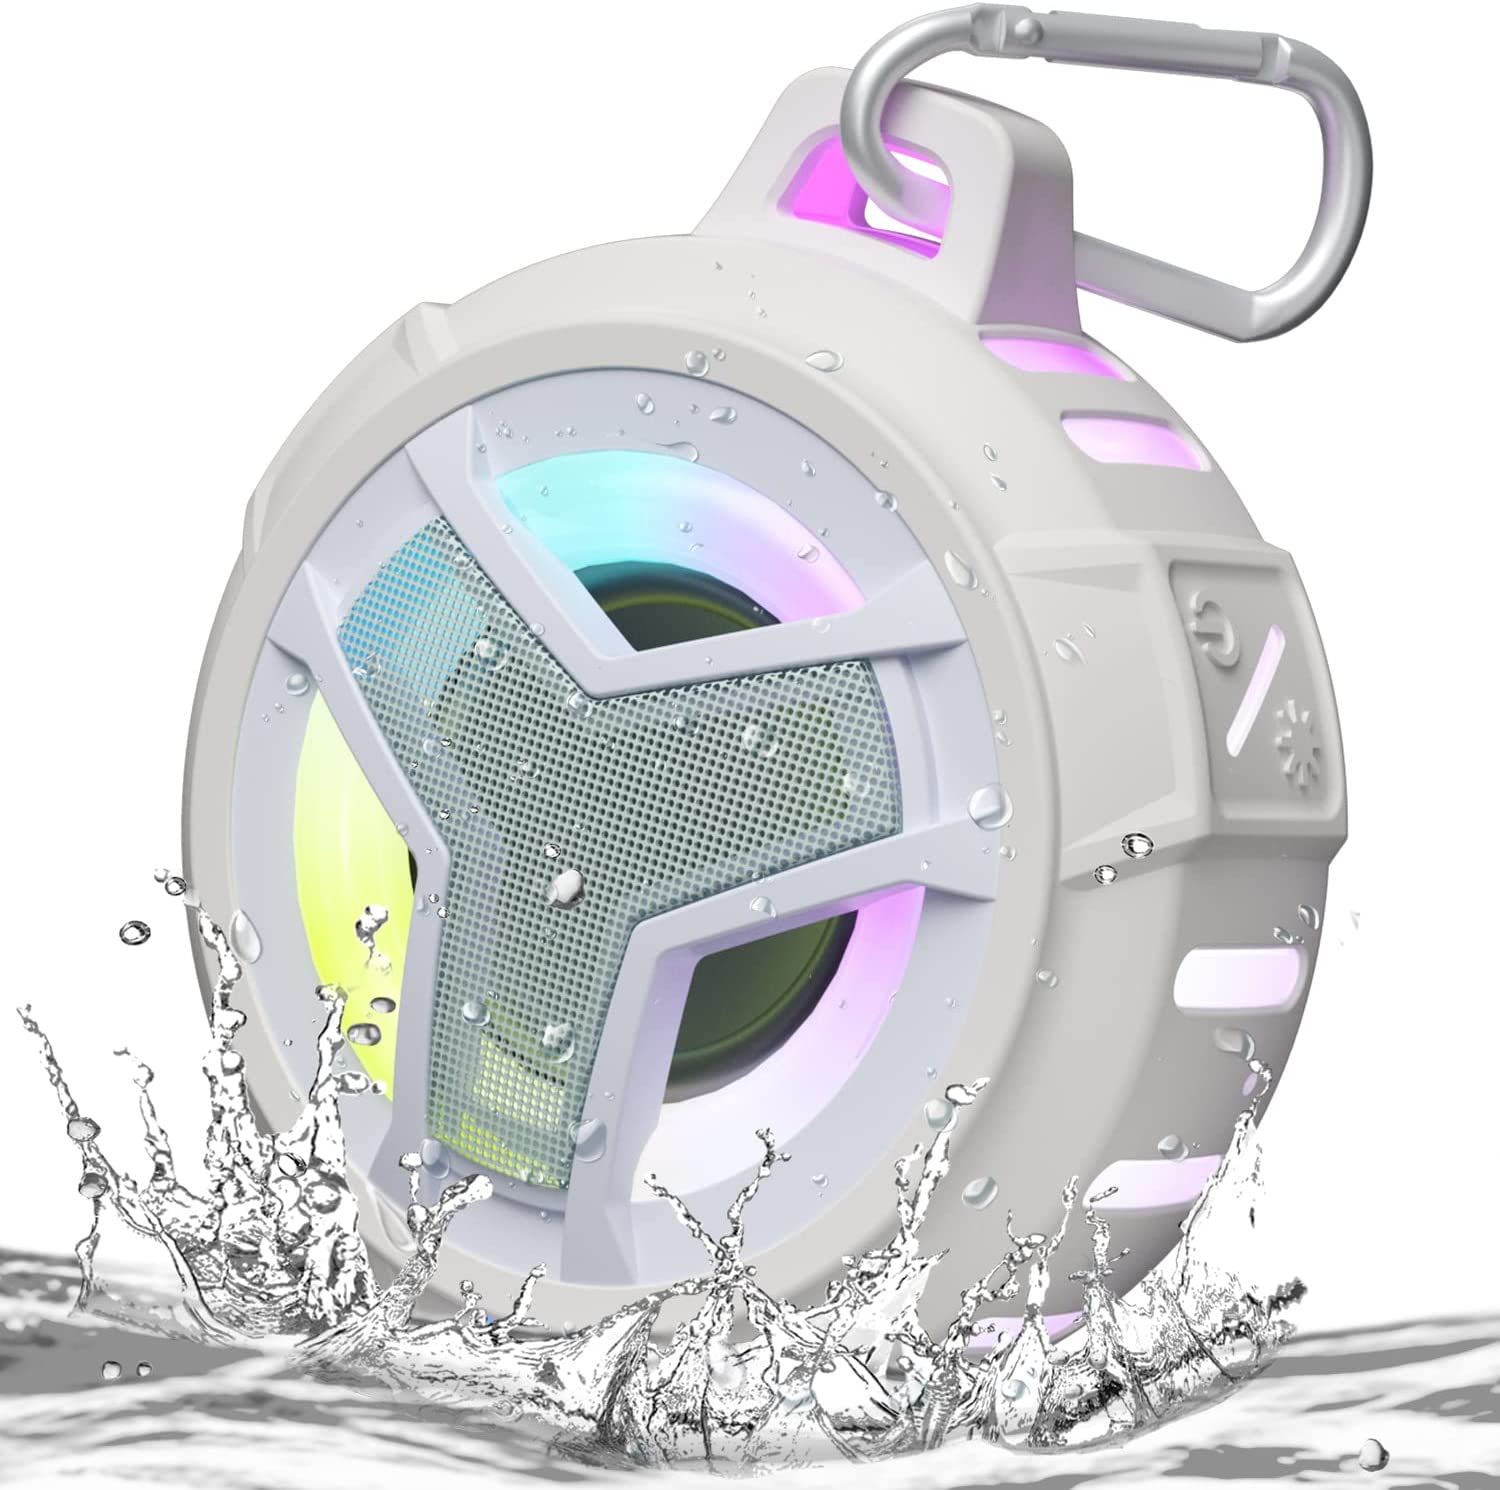 EBODA Bluetooth Shower Speaker, IPX7 Waterproof Portable Speakers, True Wireless Stereo BT 5.0 wi... | Amazon (US)